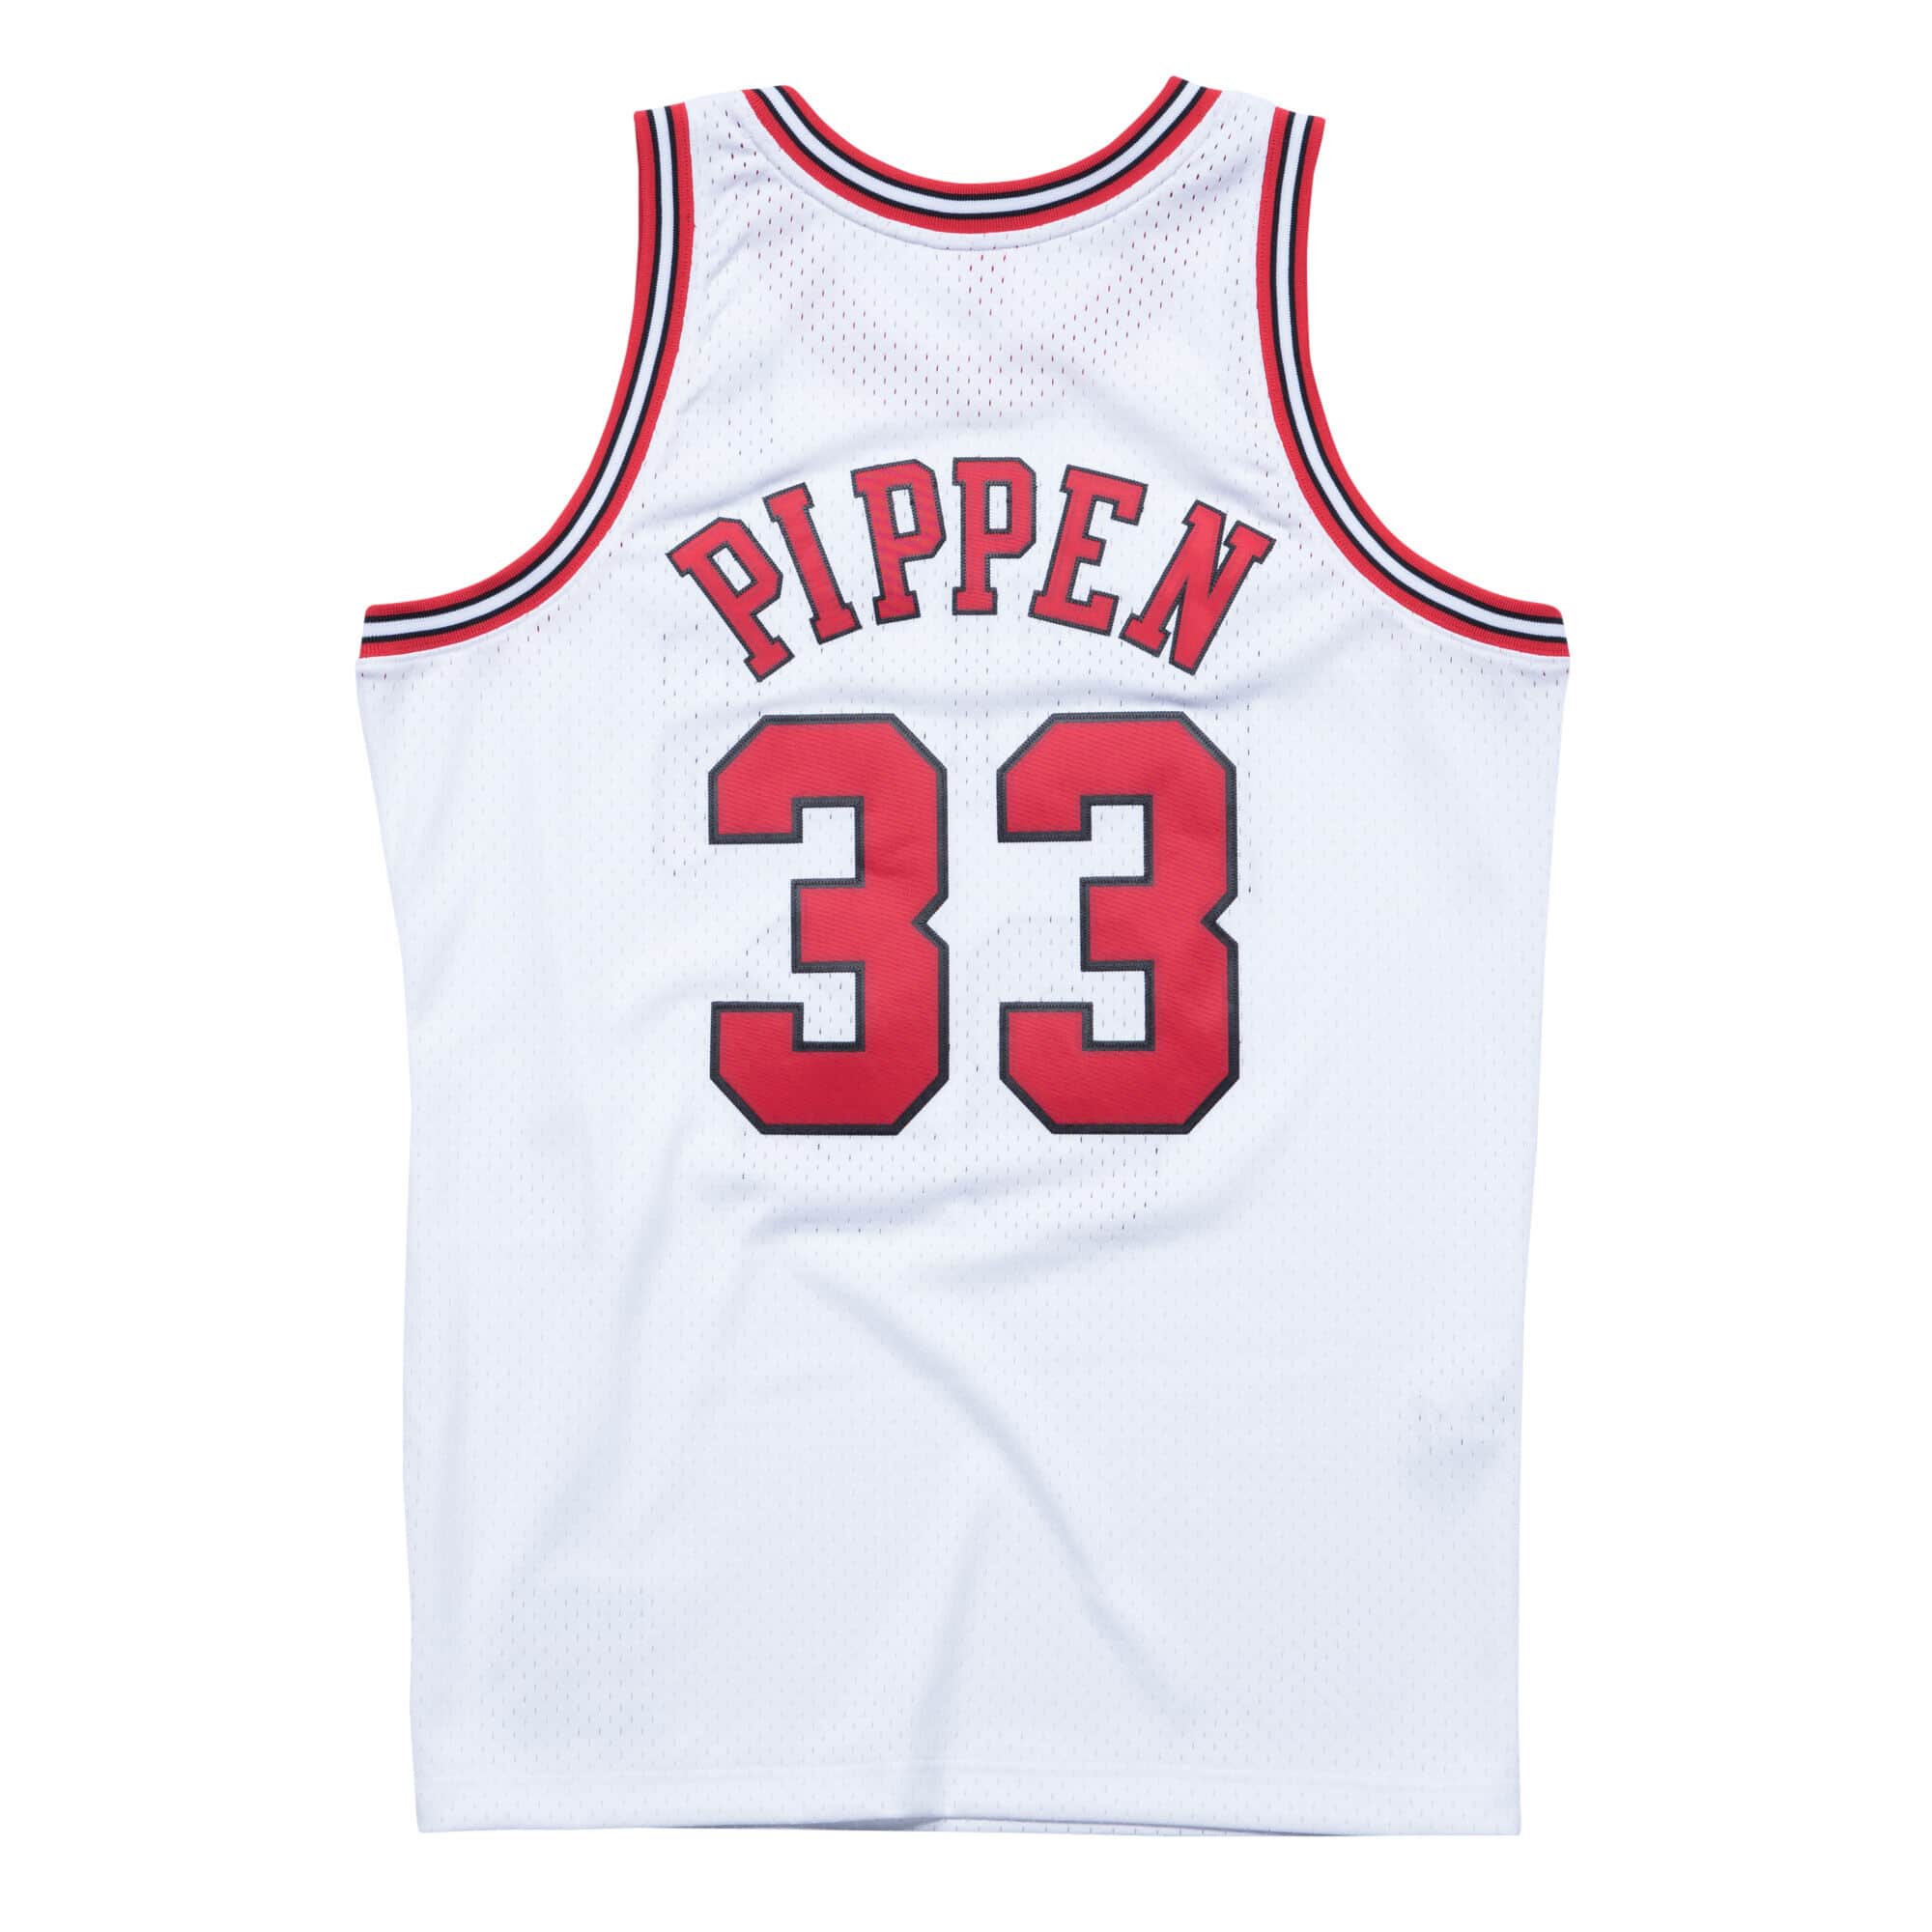 Buy Scottie Pippen Jersey Online In India -  India